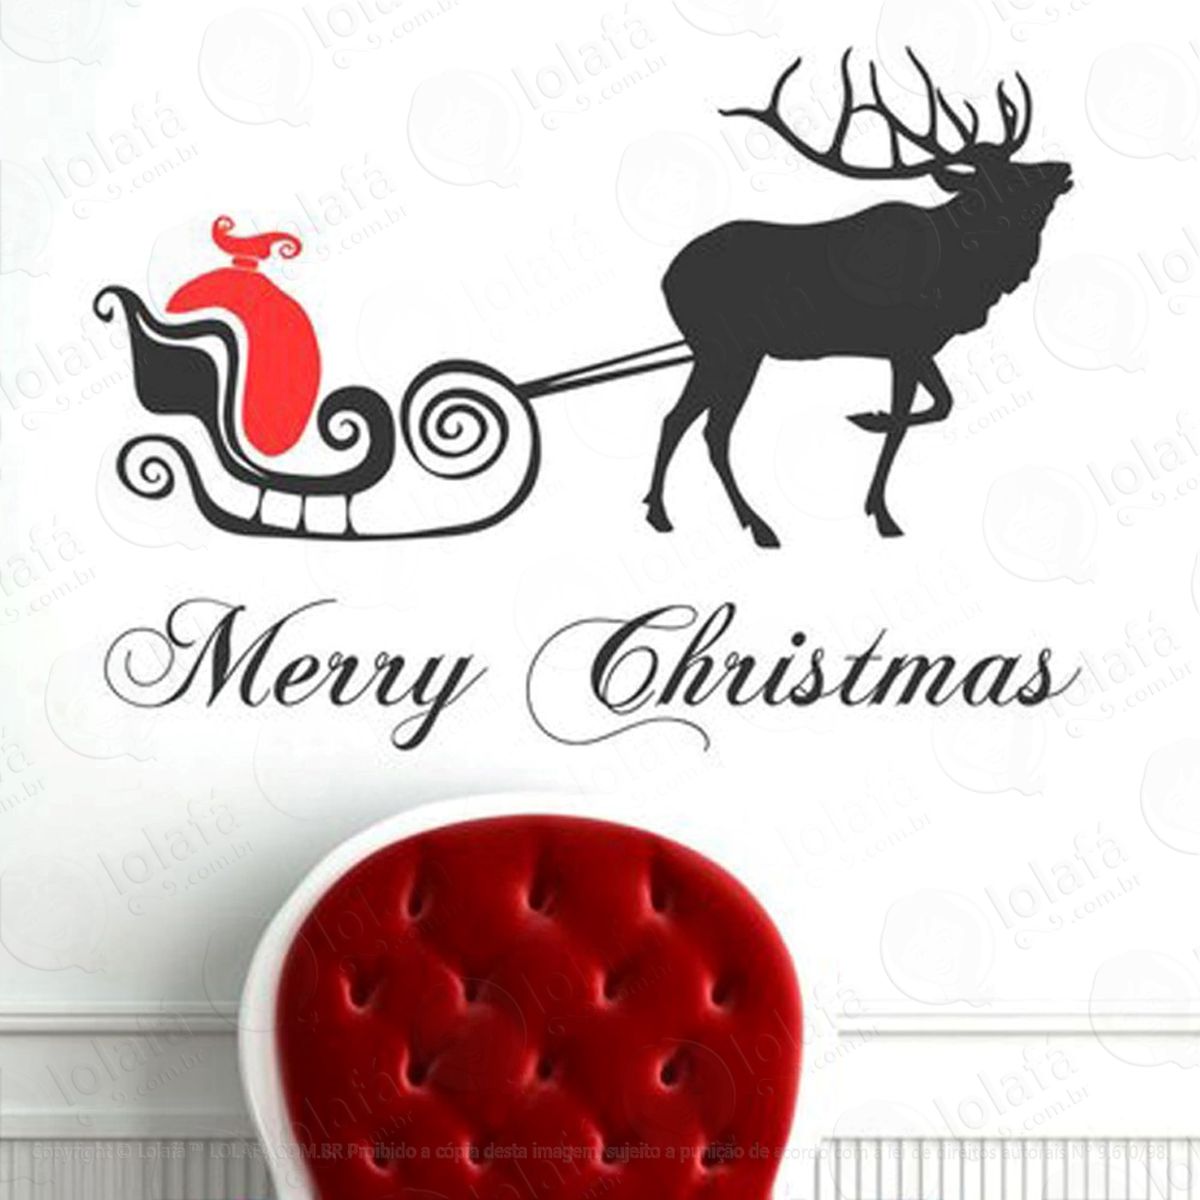 rena com presente adesivo de natal para vitrine, parede, porta de vidro - decoração natalina mod:210